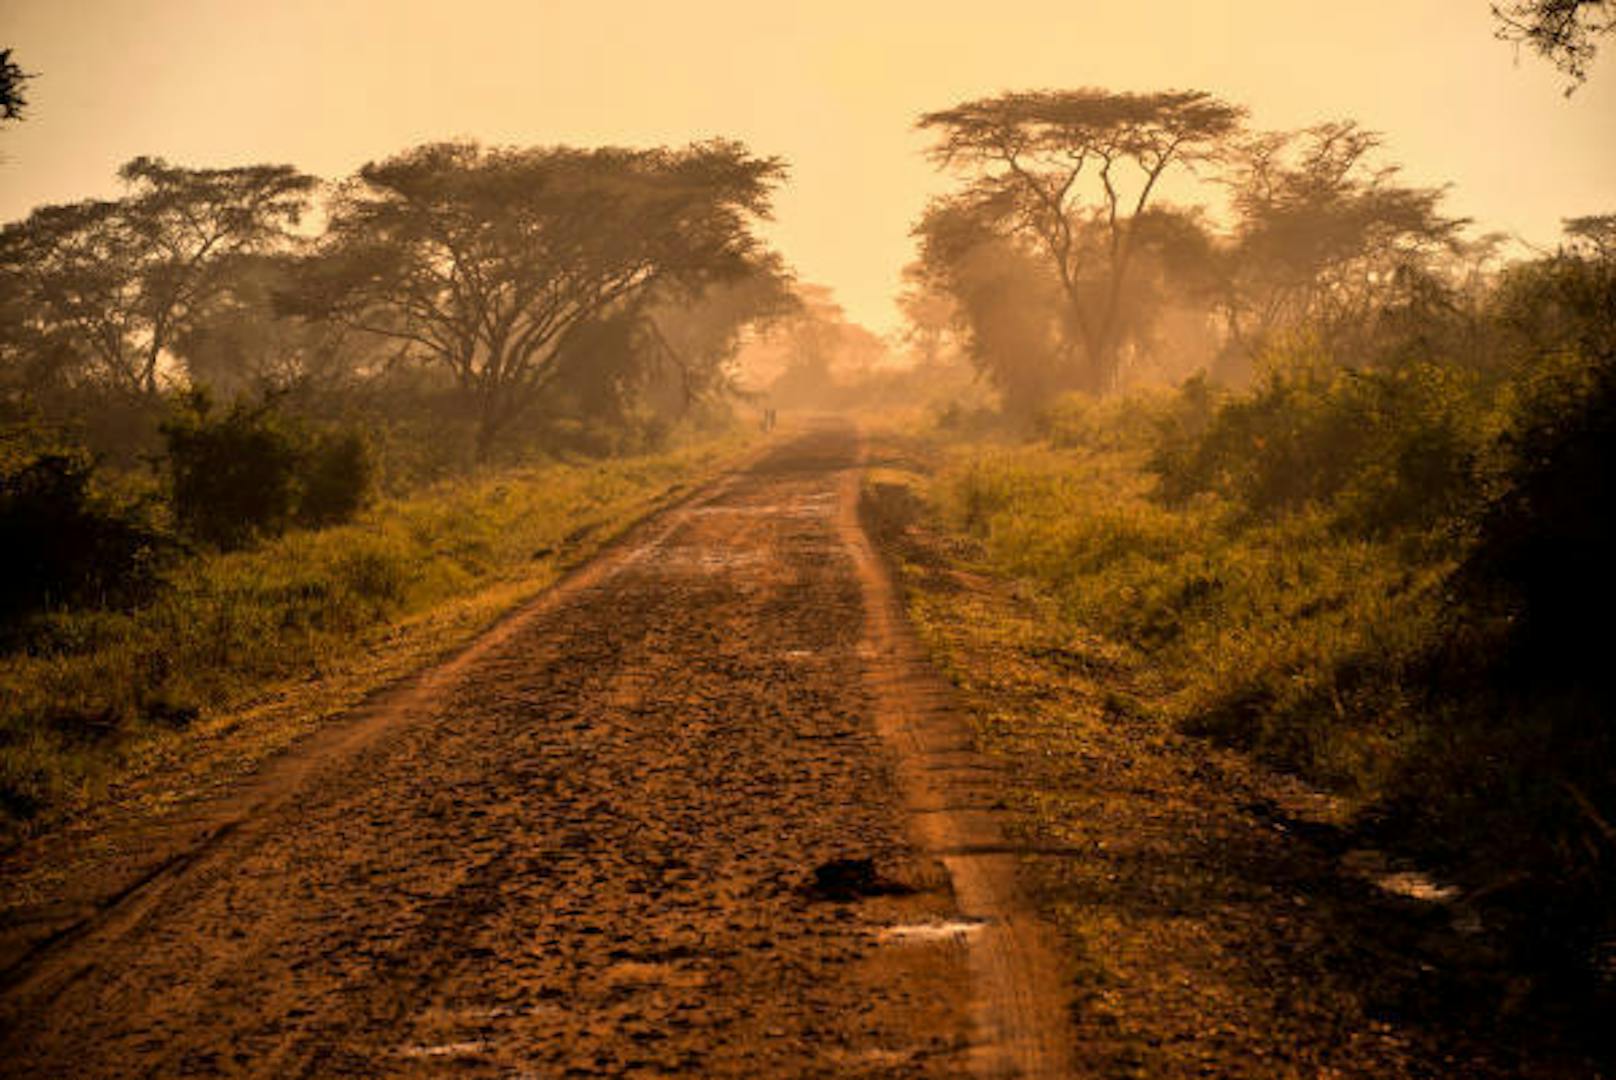 <b>Baker Trail, Südsudan / Uganda:</b> Der historische Wanderweg folgt den Spuren zweier Expeditionen, die im 19. Jahrhundert unter anderem die Quelle des Nil zum Ziel hatten. Distanz: 805 Kilometer, Dauer 30 bis 40 Tage, Anforderung: mittel bis schwer.